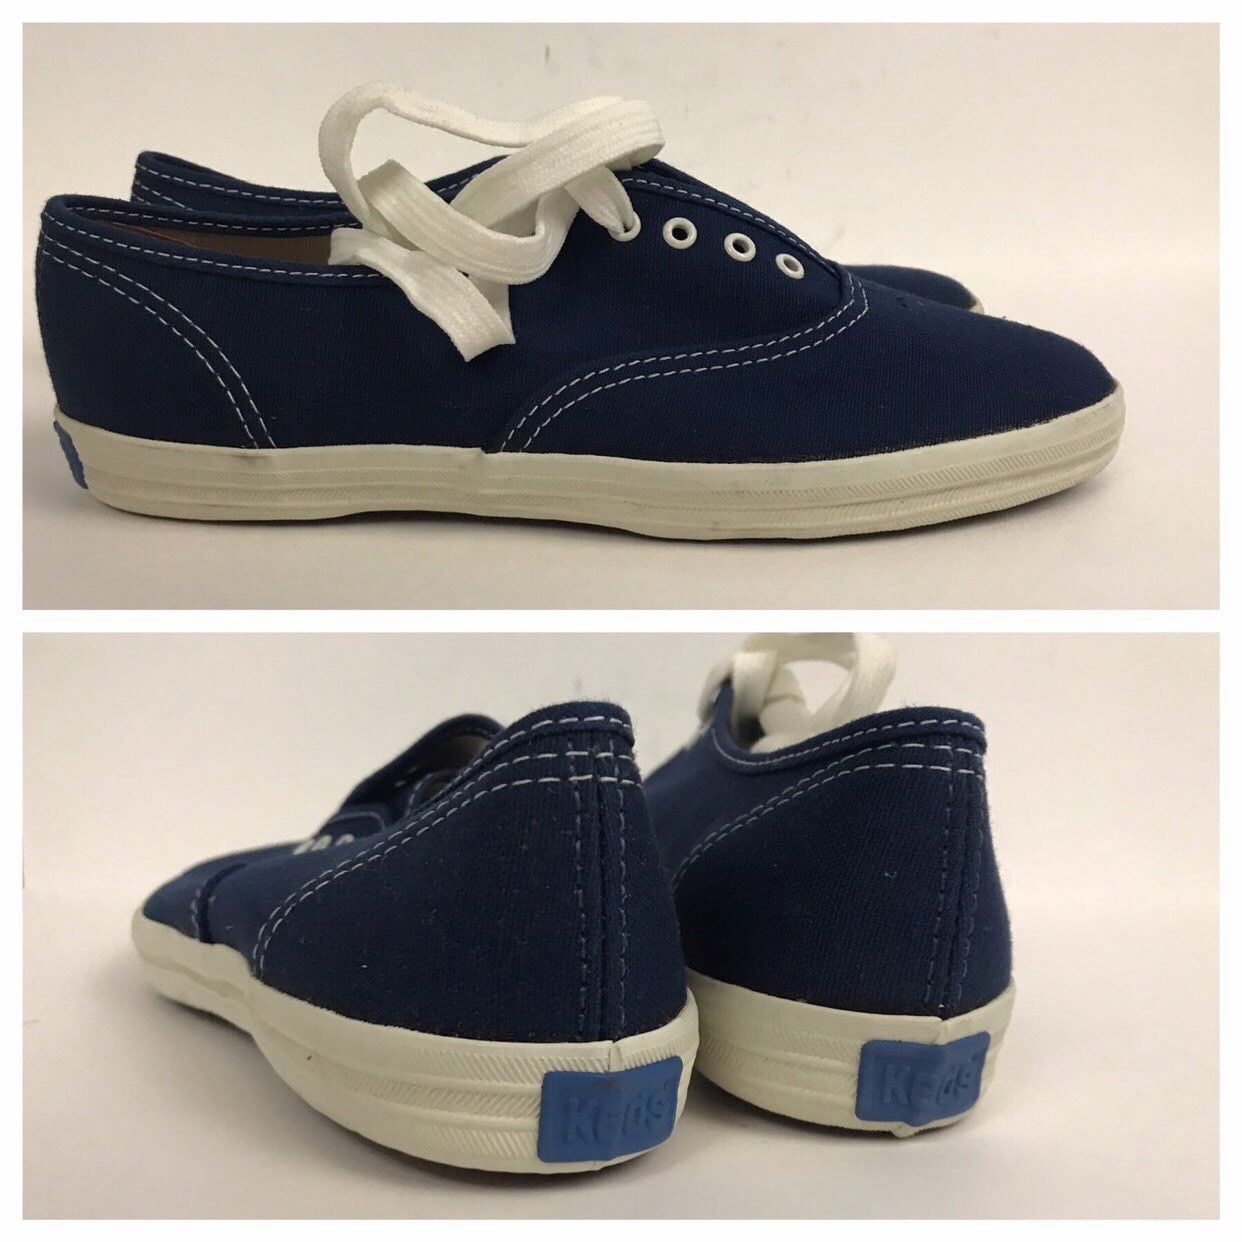 1980s Keds Tennis Shoes / Unworn Navy Blue Canvas Cotton Oxford Shoes 6 ...